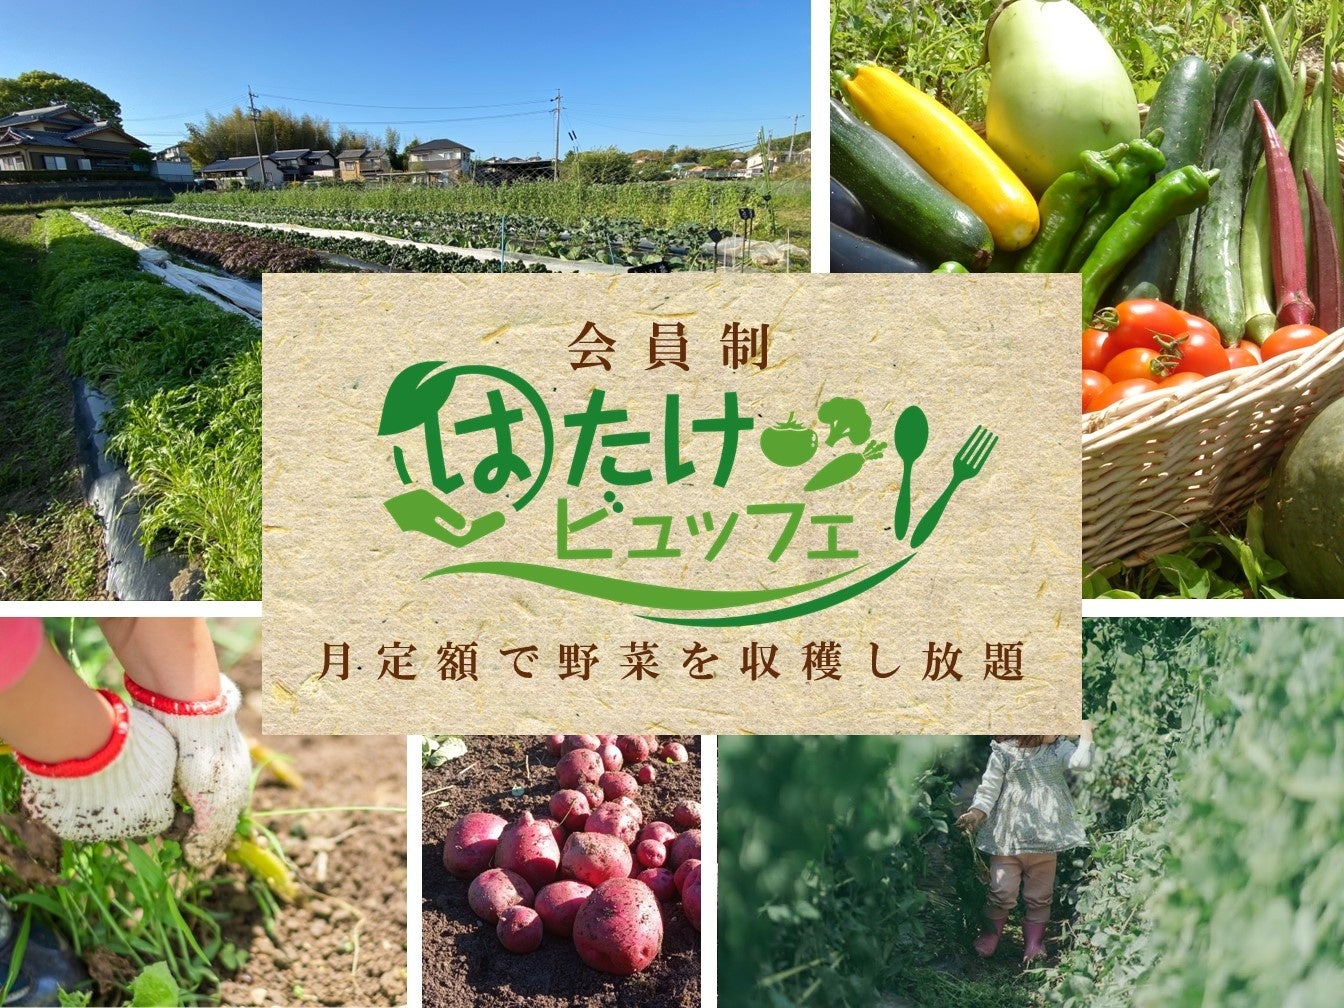 月定額で多種類の野菜を収穫し放題！SDGsに貢献するサブスクリプションサービス「はたけビュッフェ」5月上旬に埼玉県さいたま市と愛知県岡崎市でオープン